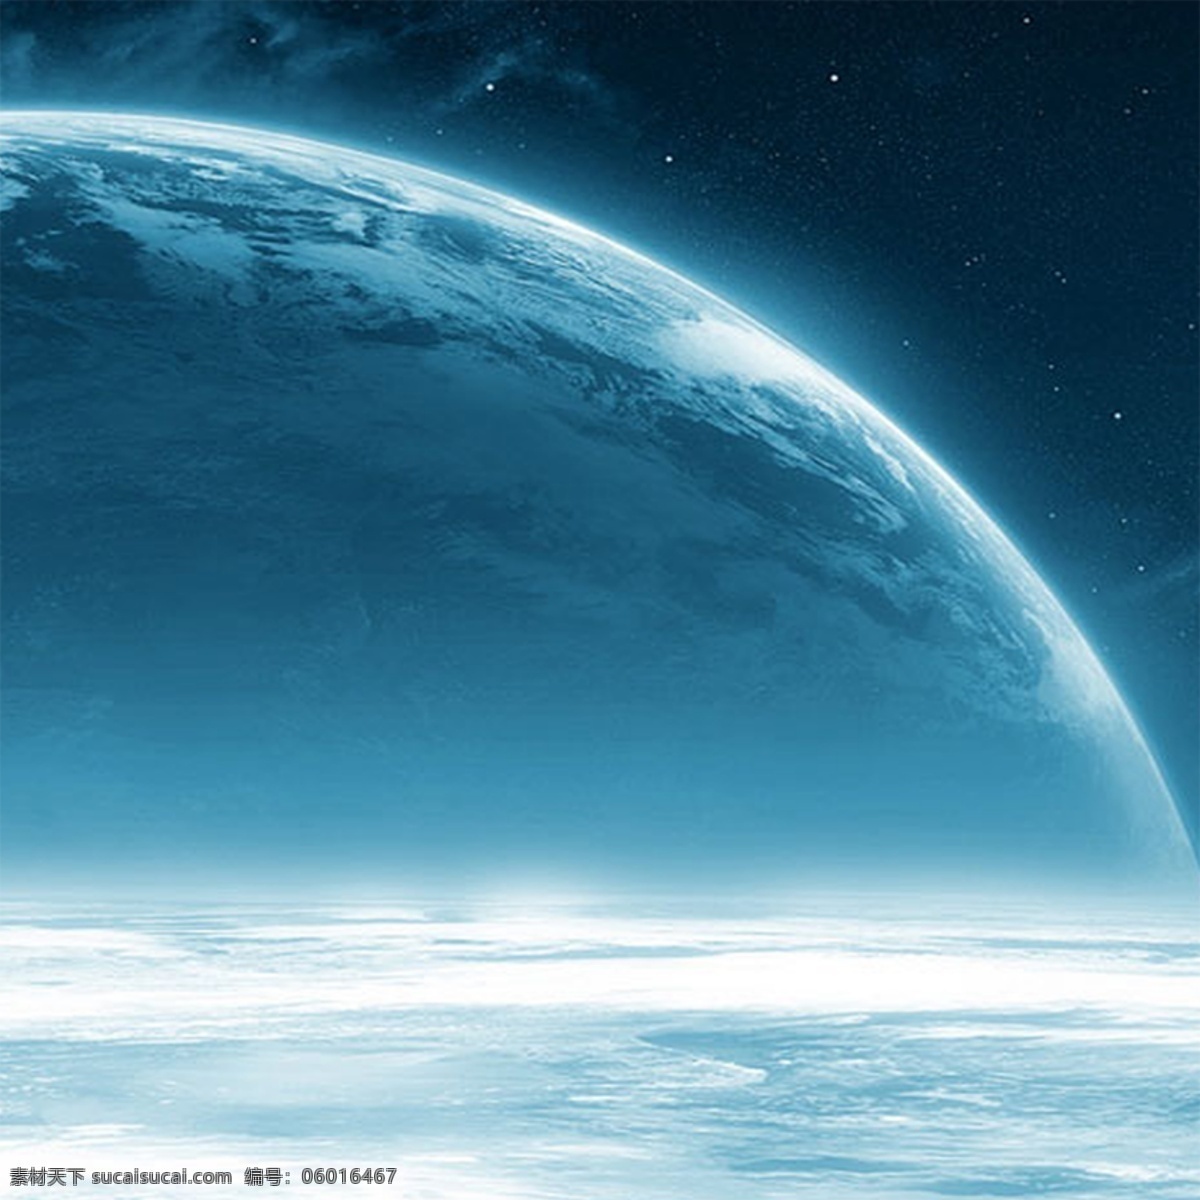 蓝色地球背景 地球 大气 背景 创意 光 科技 科技背景 蓝色 蓝色背景 蓝色科技背景 屏幕 青色 天蓝色